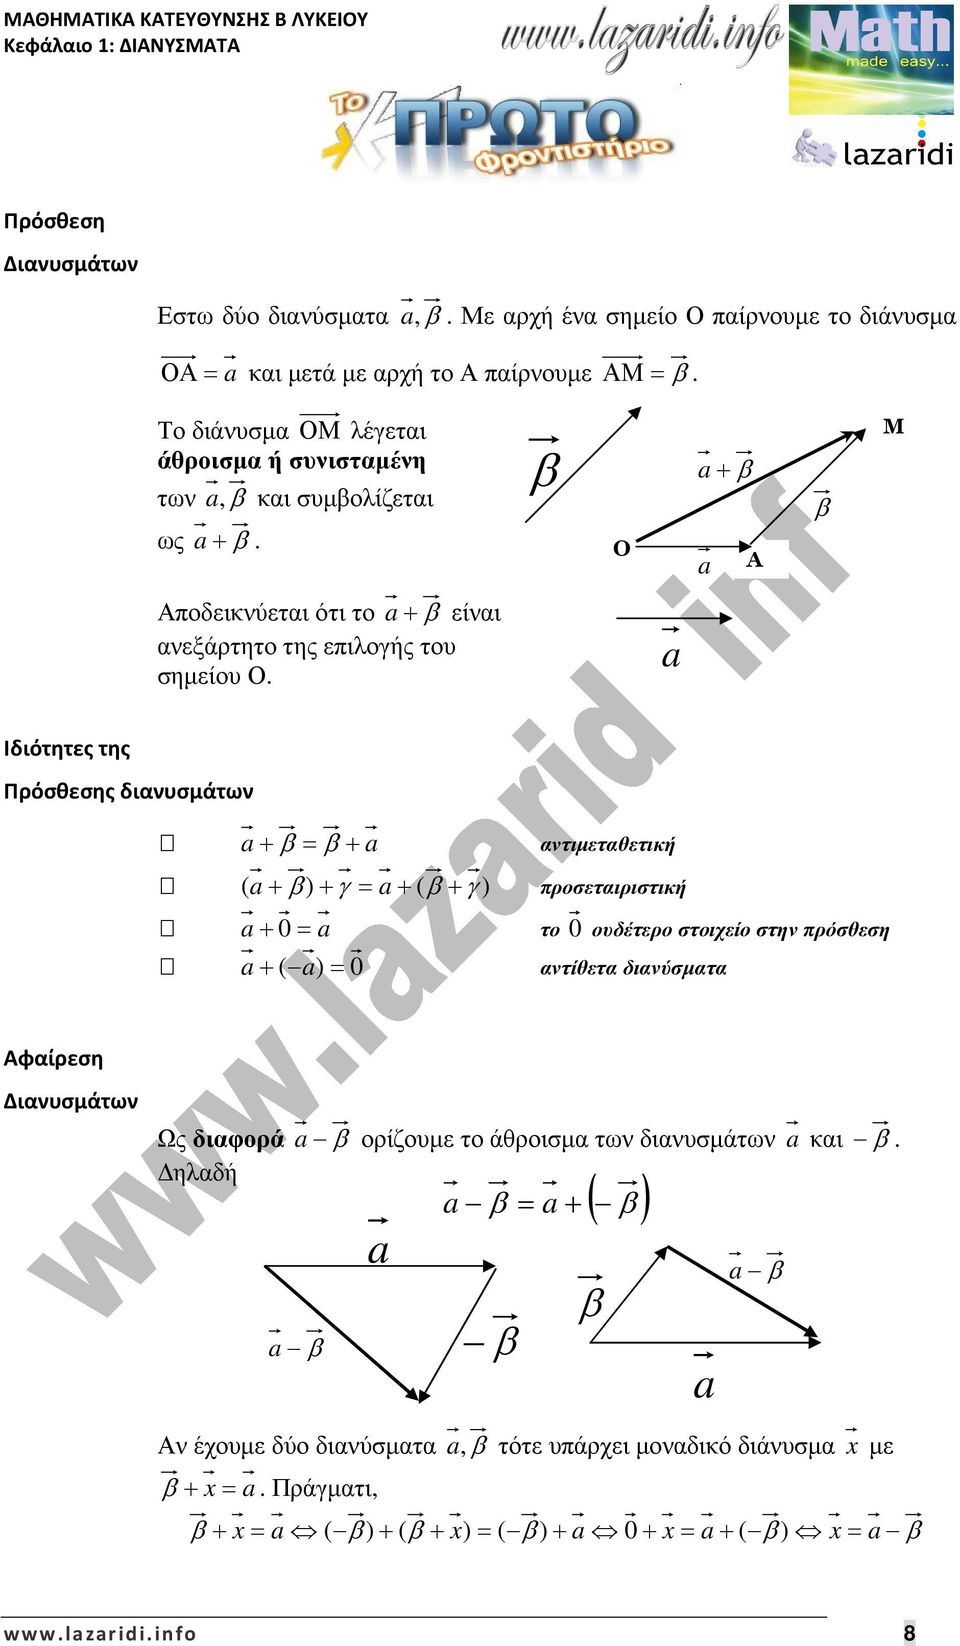 Ιδιότητες της Πρόσθεσης διανυσμάτων αντιµεταθετική ( ) γ ( γ ) προσεταιριστική 0 το 0 ουδέτερο στοιχείο στην πρόσθεση ( ) 0 αντίθετα διανύσµατα Αφαίρεση